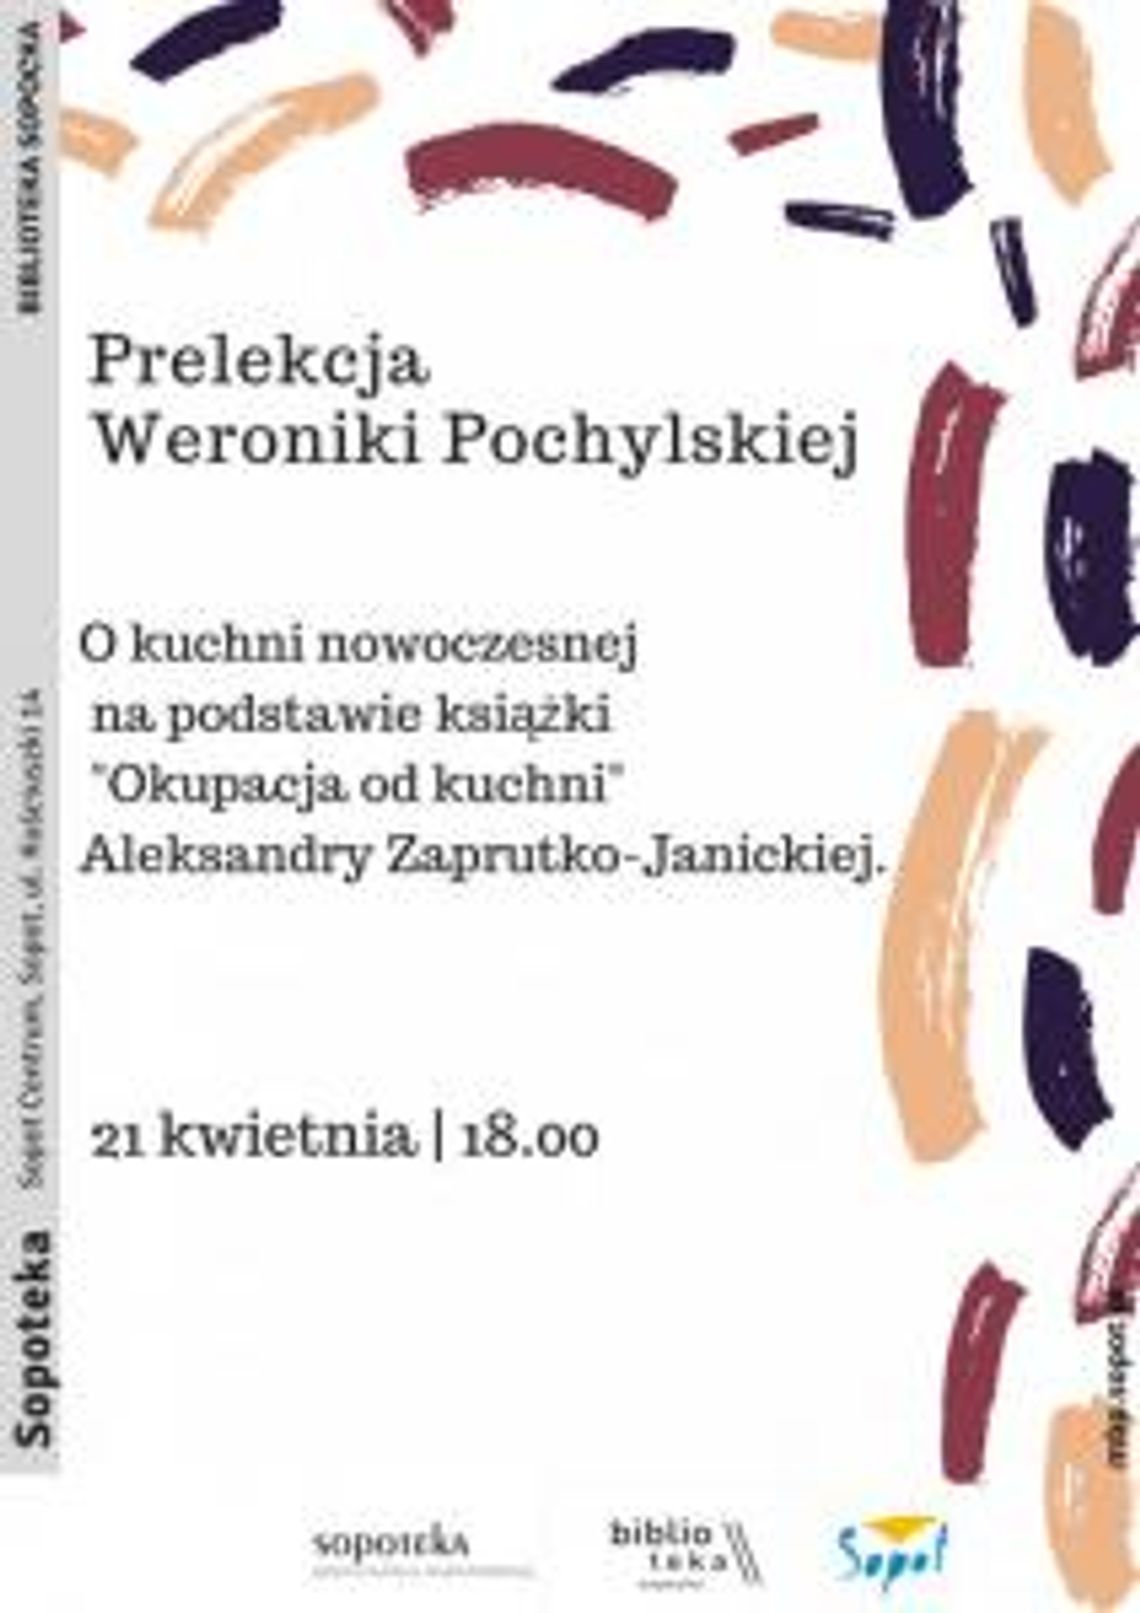 O kuchni nowoczesnej - wykład Weroniki Pochylskiej.